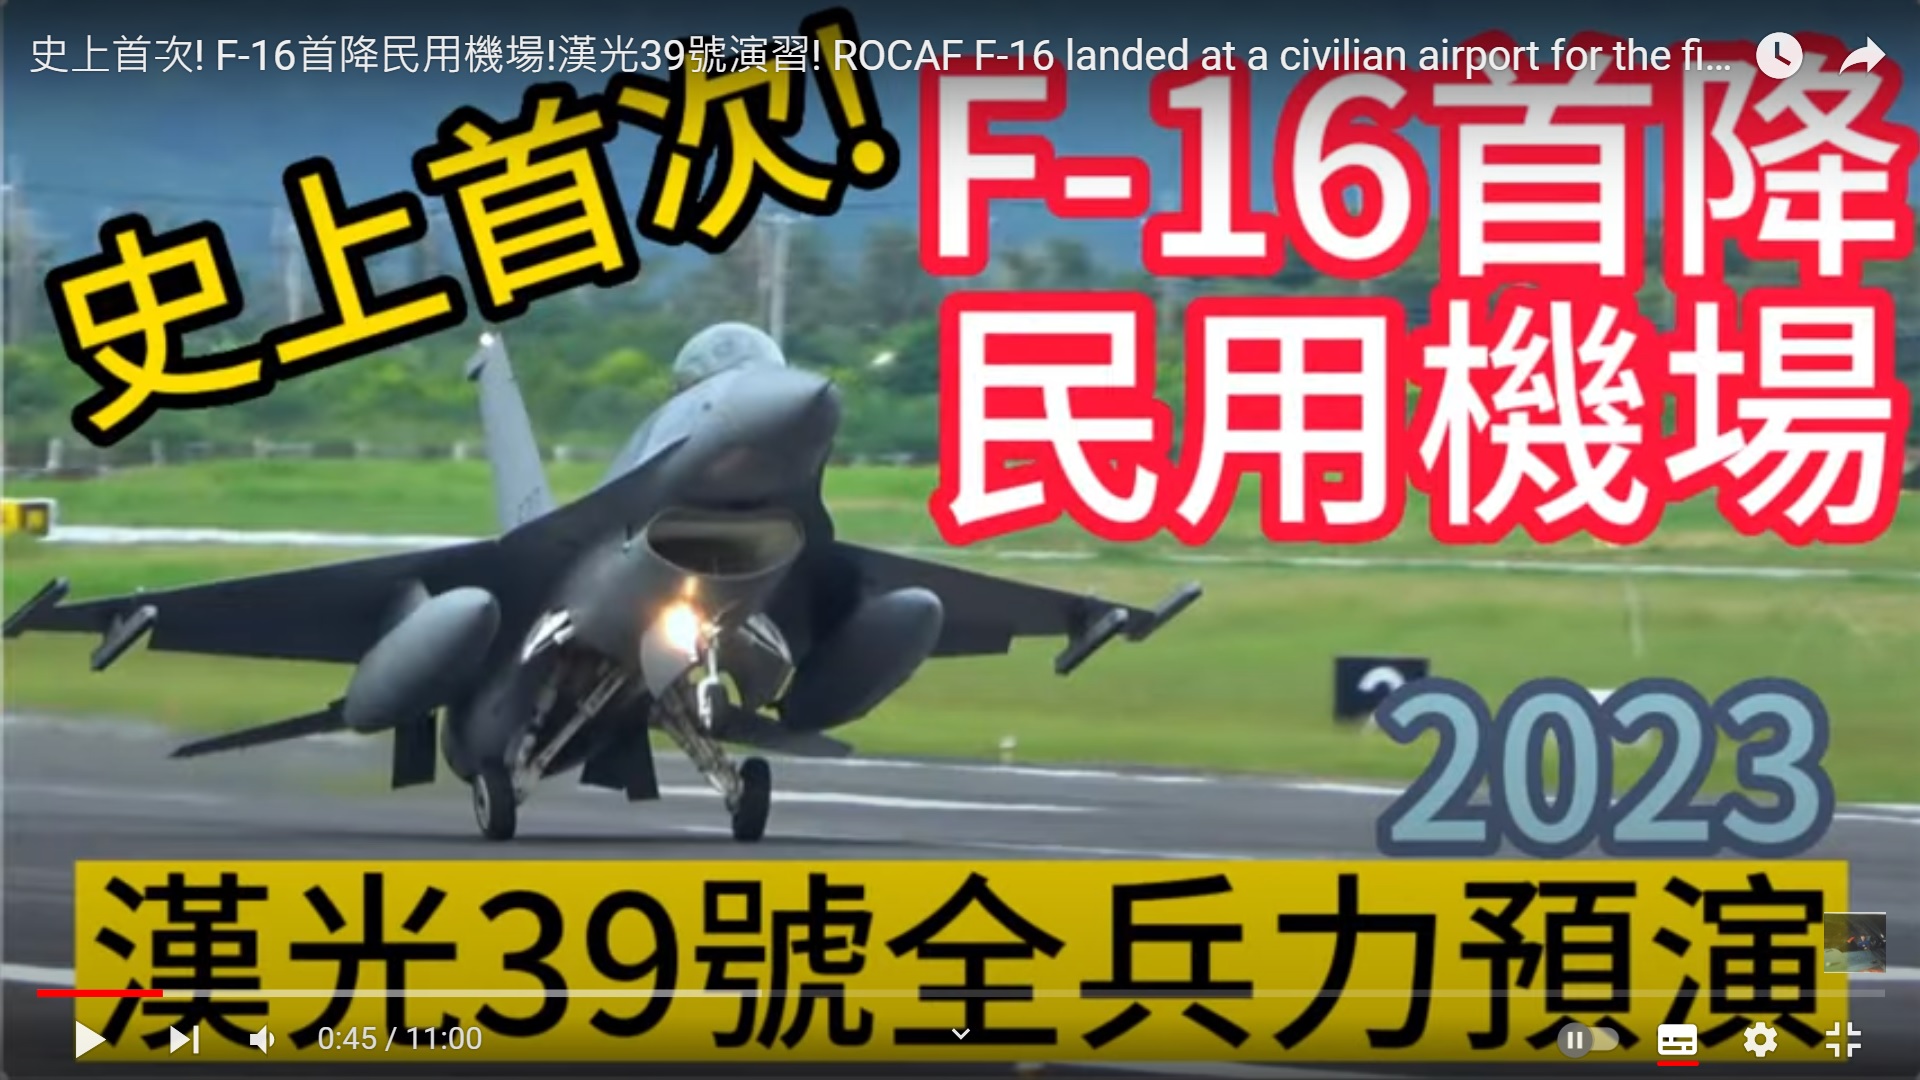 史上首次! F-16首降民用機場!漢光39號演習!